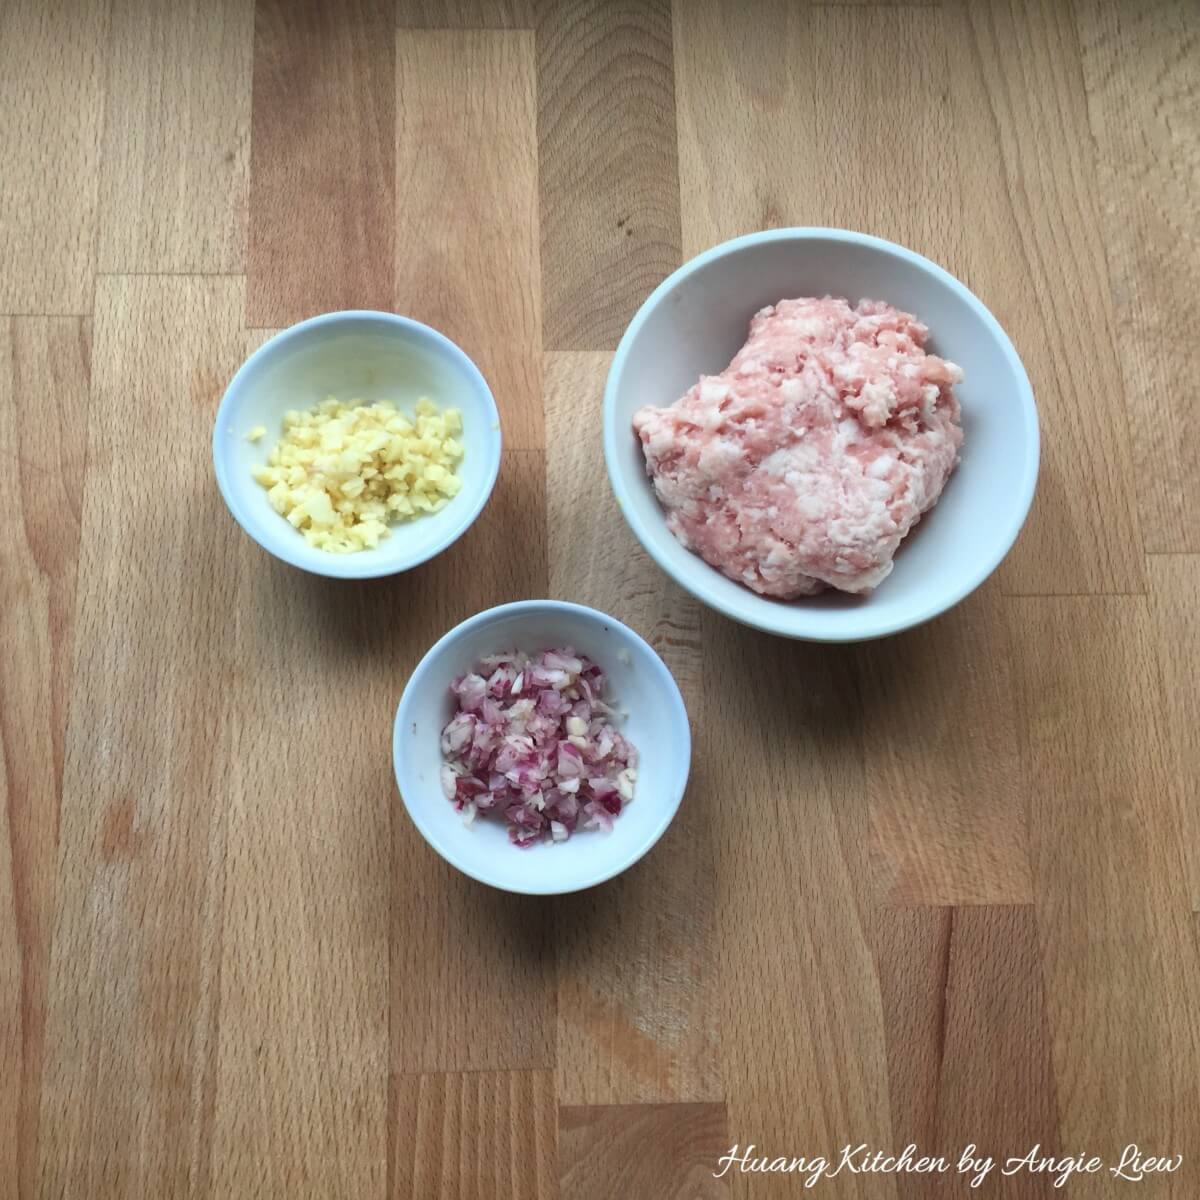 Chop garlic, shallots and meat.